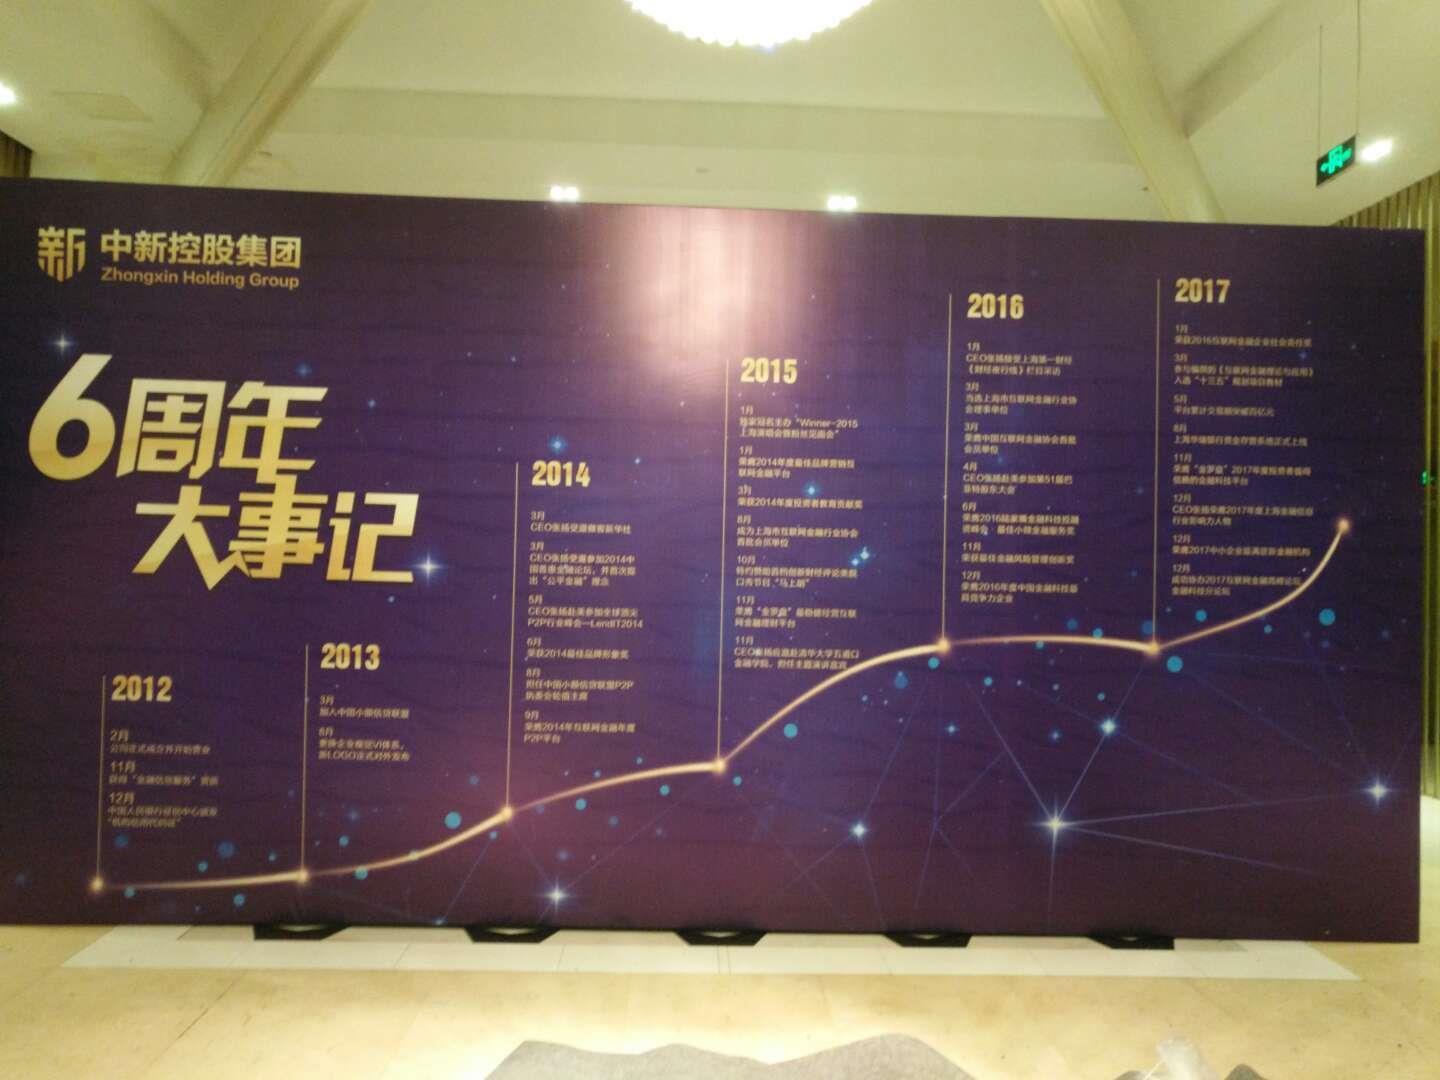 上海商场开业庆典舞台音响租赁公司 上海束影文化传播有限公司